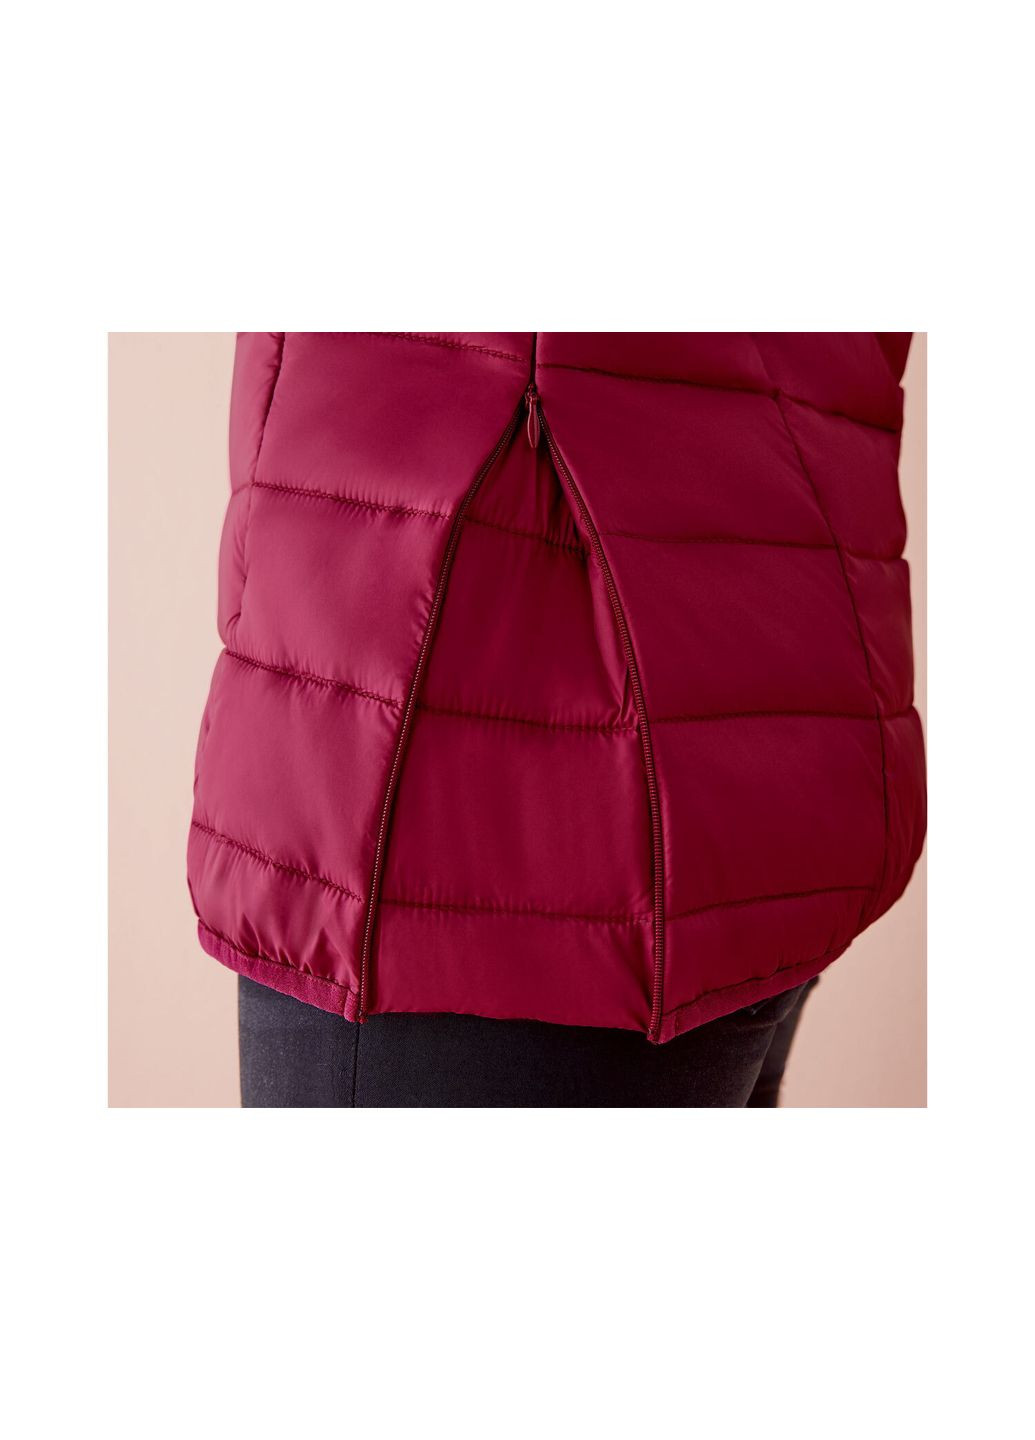 Бордова демісезонна куртка демісезонна для вагітних і слінгокуртка 3 в 1 для жінки bionic-finish® eco 357573 бордовий Esmara